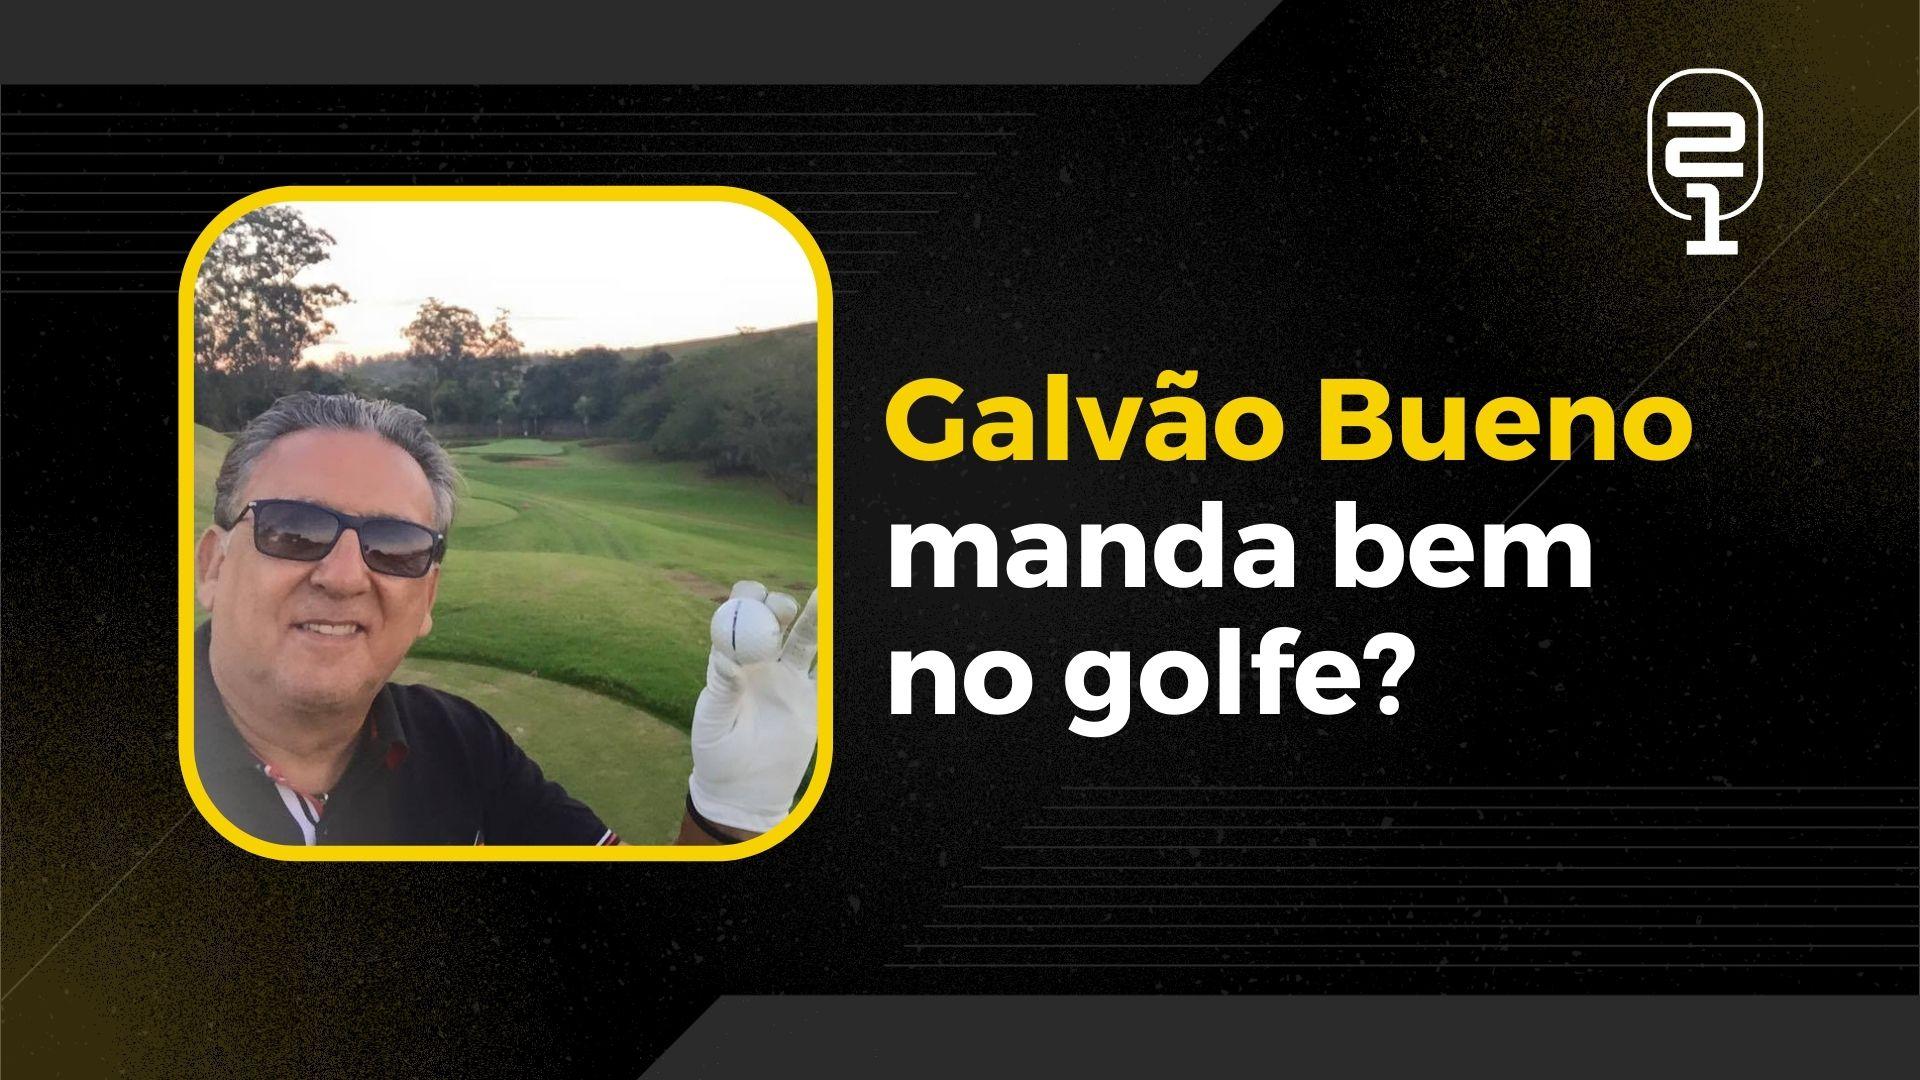 Futuro golfista, Dagoberto “avalia” jogo de Galvão Bueno